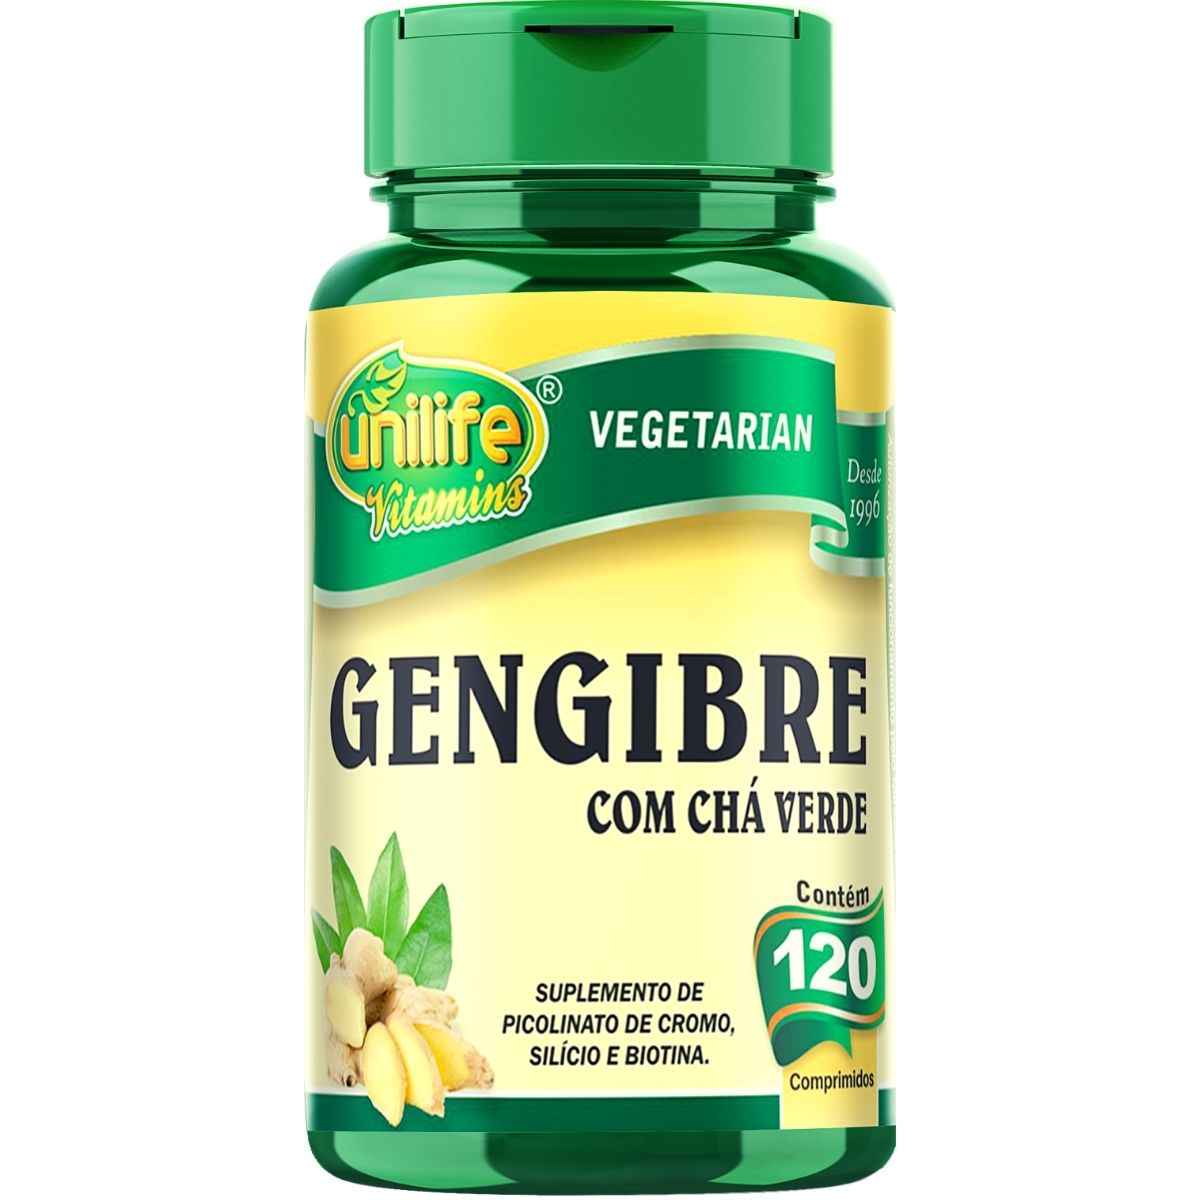 Gengibre C/ Chá Verde 400mg 120 Comprimidos - Unilife